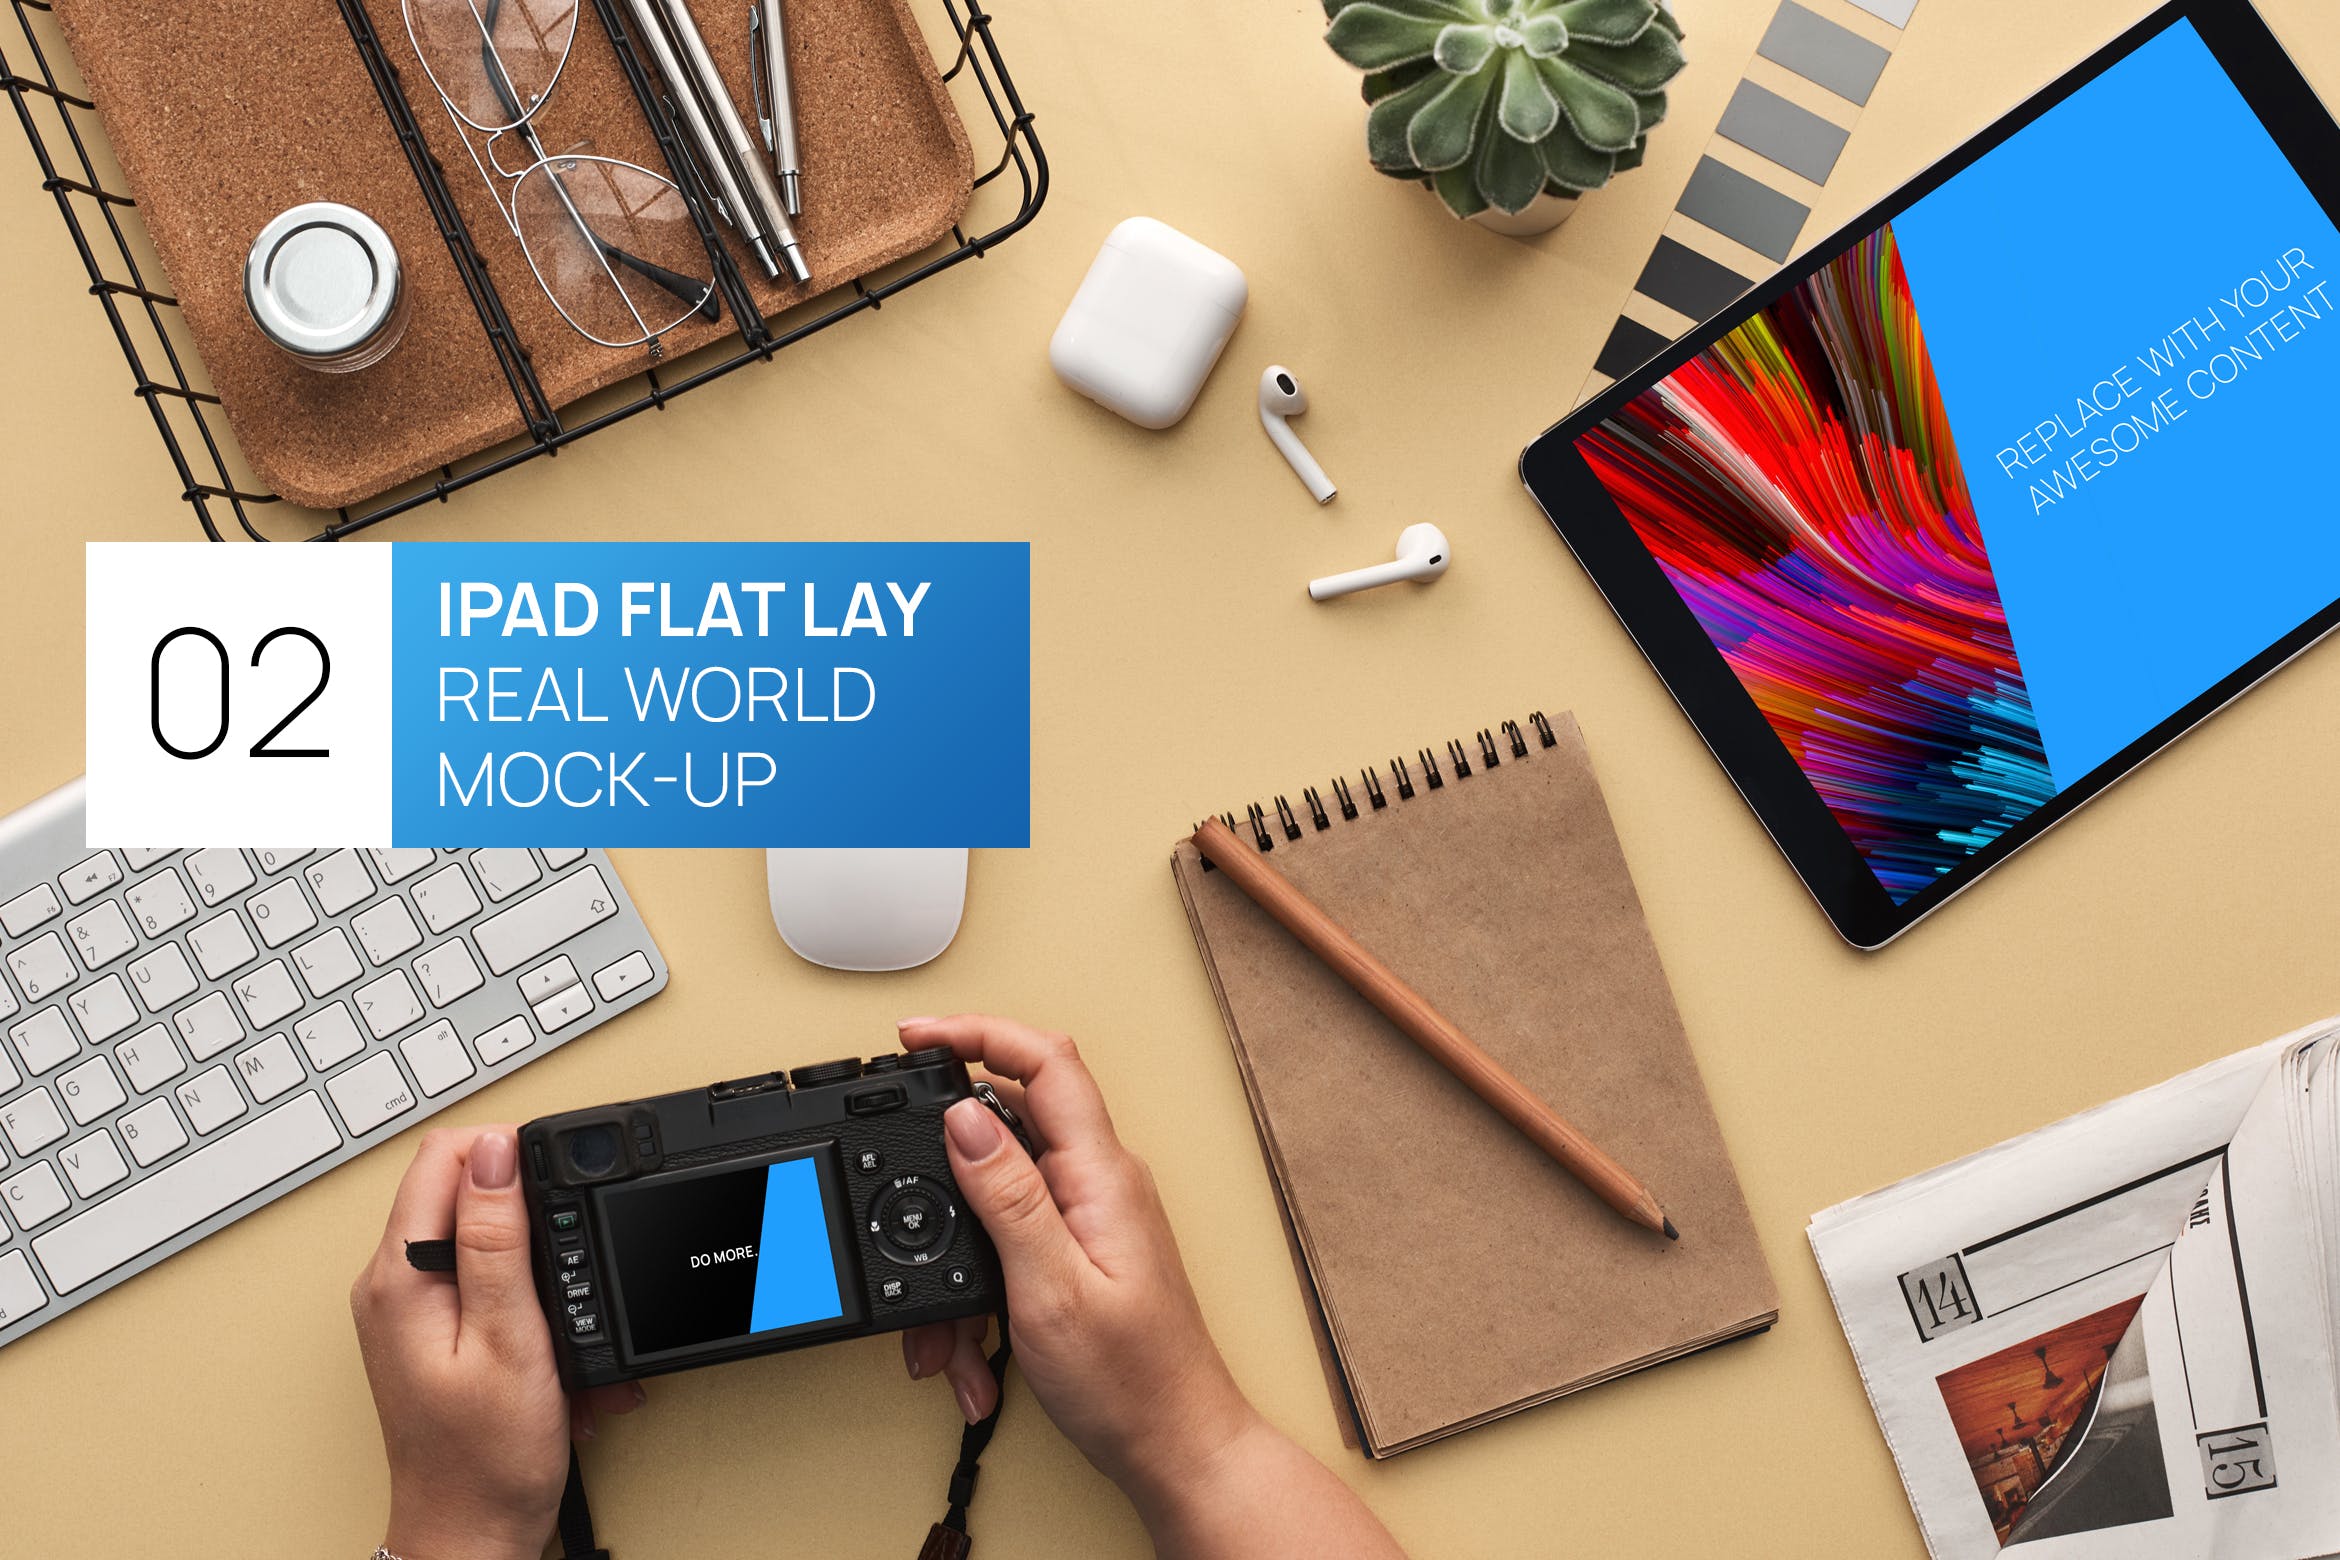 办公桌俯视图iPad Pro平板电脑蚂蚁素材精选样机模板 iPad Pro Flat Lay Real World Photo Mock-up插图